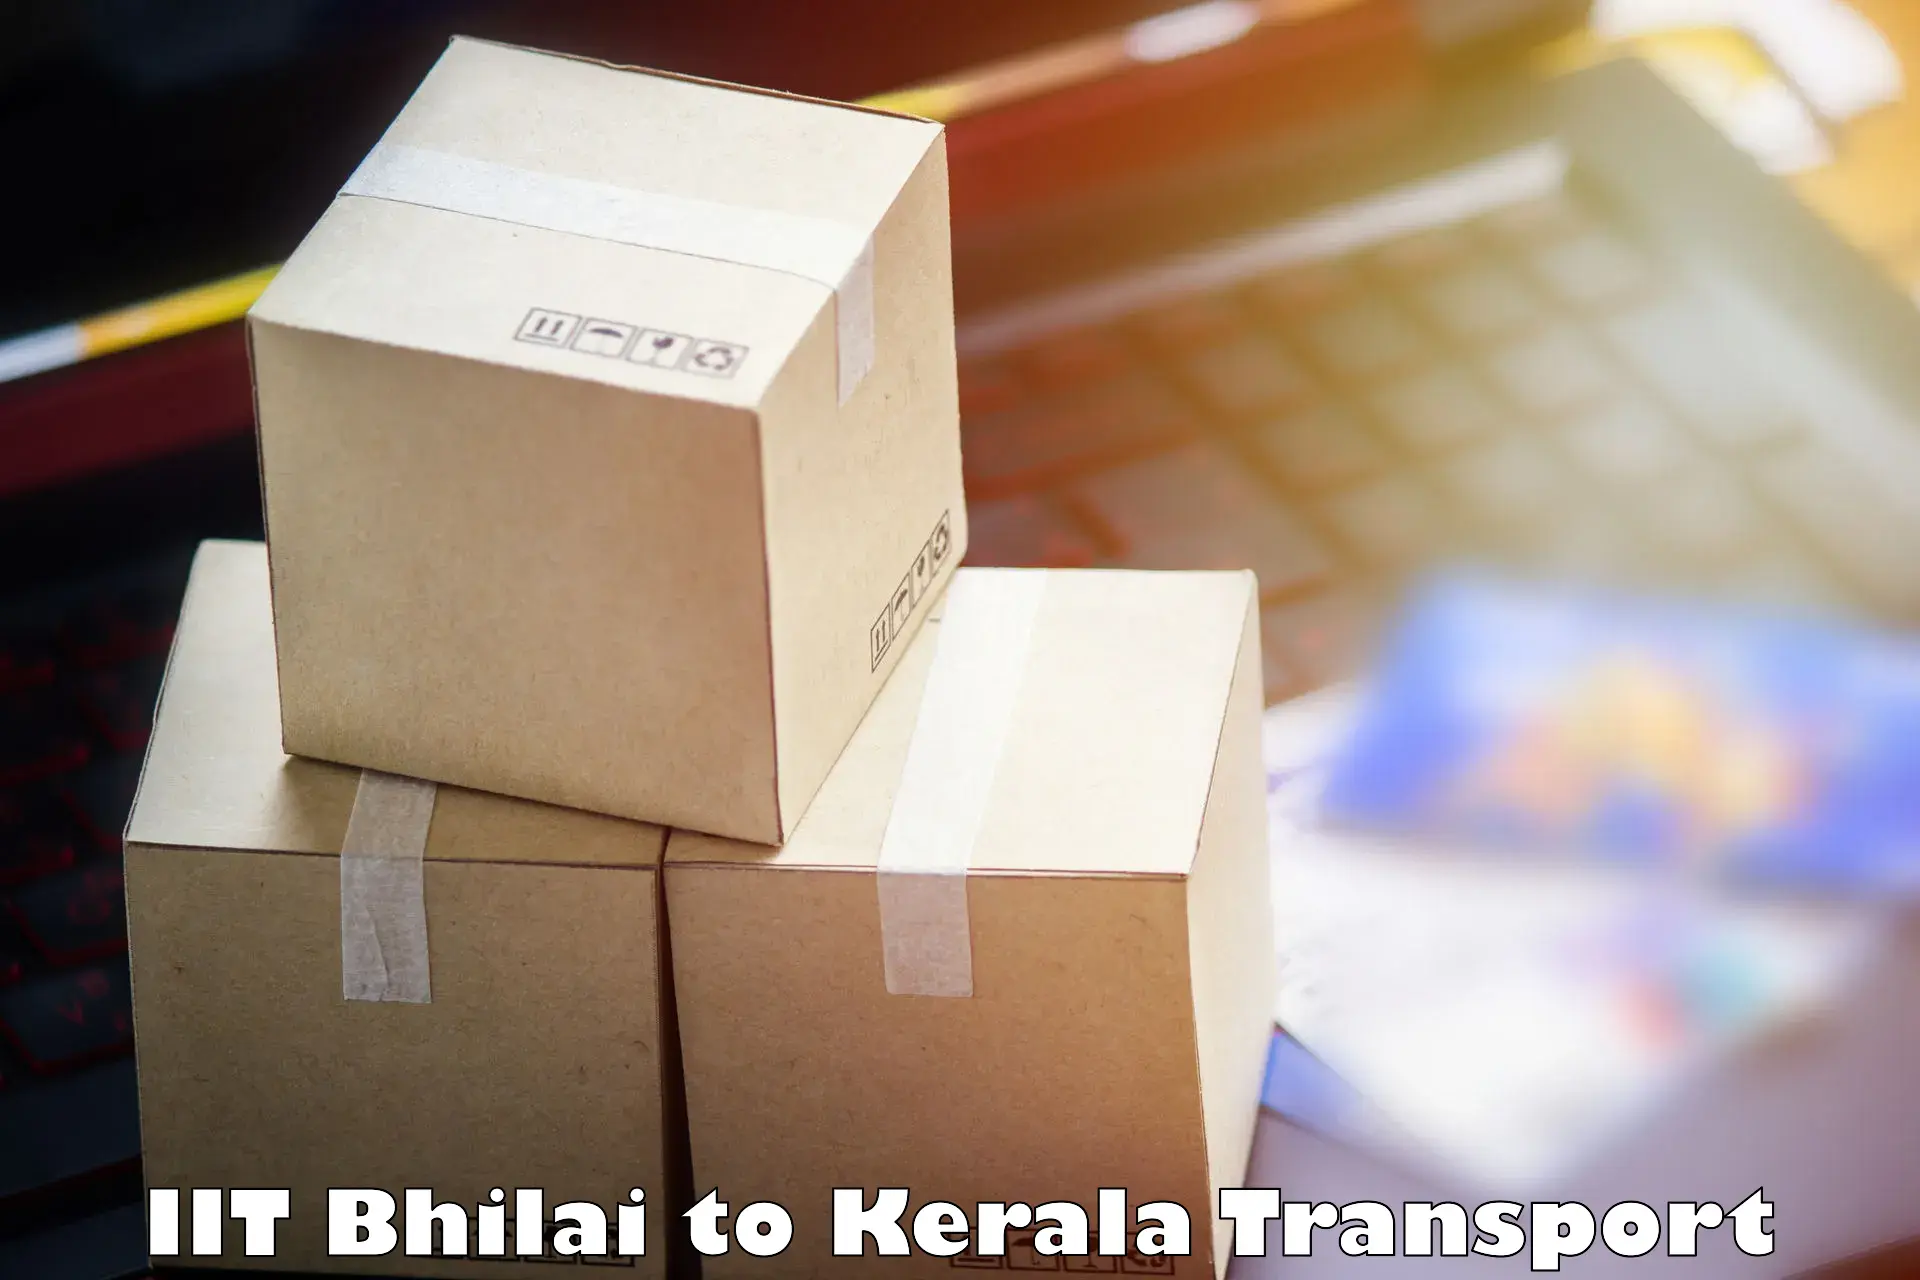 Two wheeler parcel service IIT Bhilai to Kayamkulam